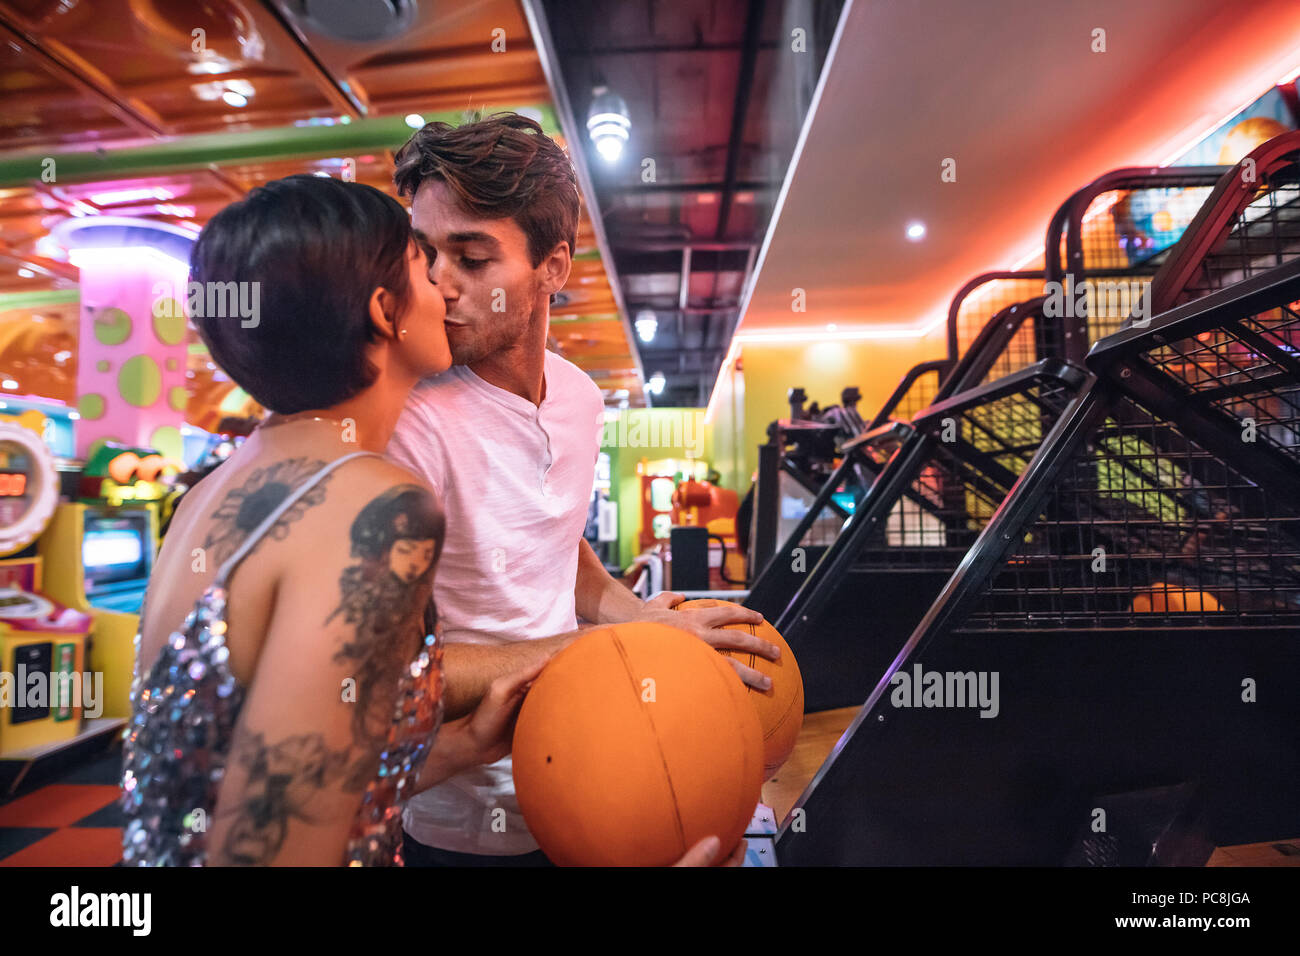 Paar küssen einander stehen in einem Gaming Salon holding Basketbälle. Mann und Frau in romantischer Stimmung bei einem Gaming Arcade Spaß spielen. Stockfoto